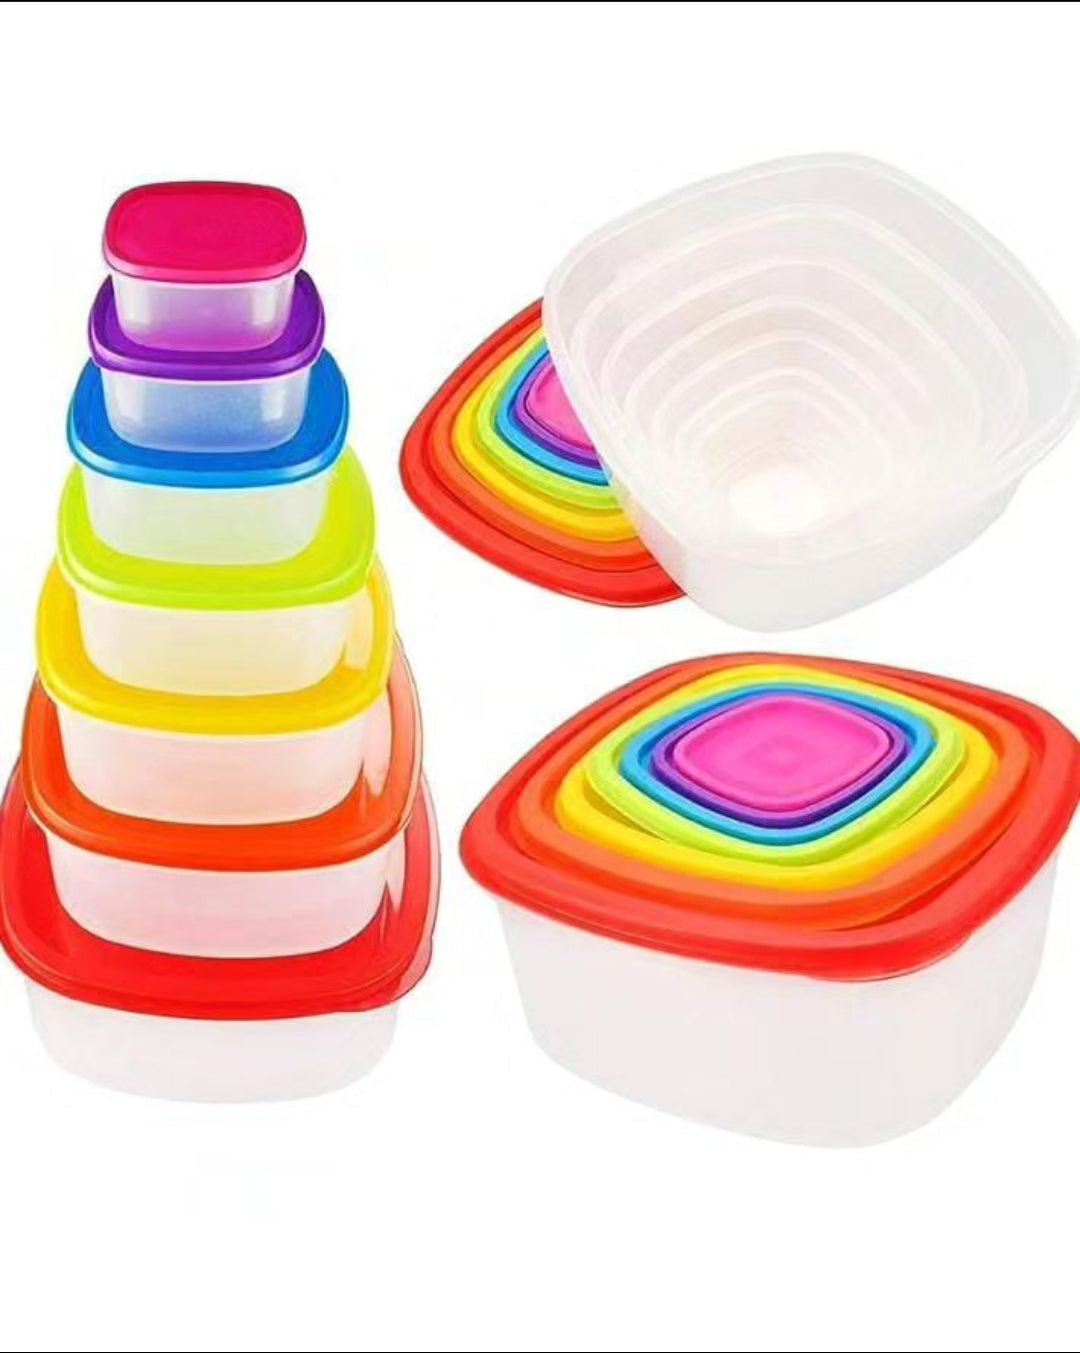 Multicolor 7pc Square Bowls